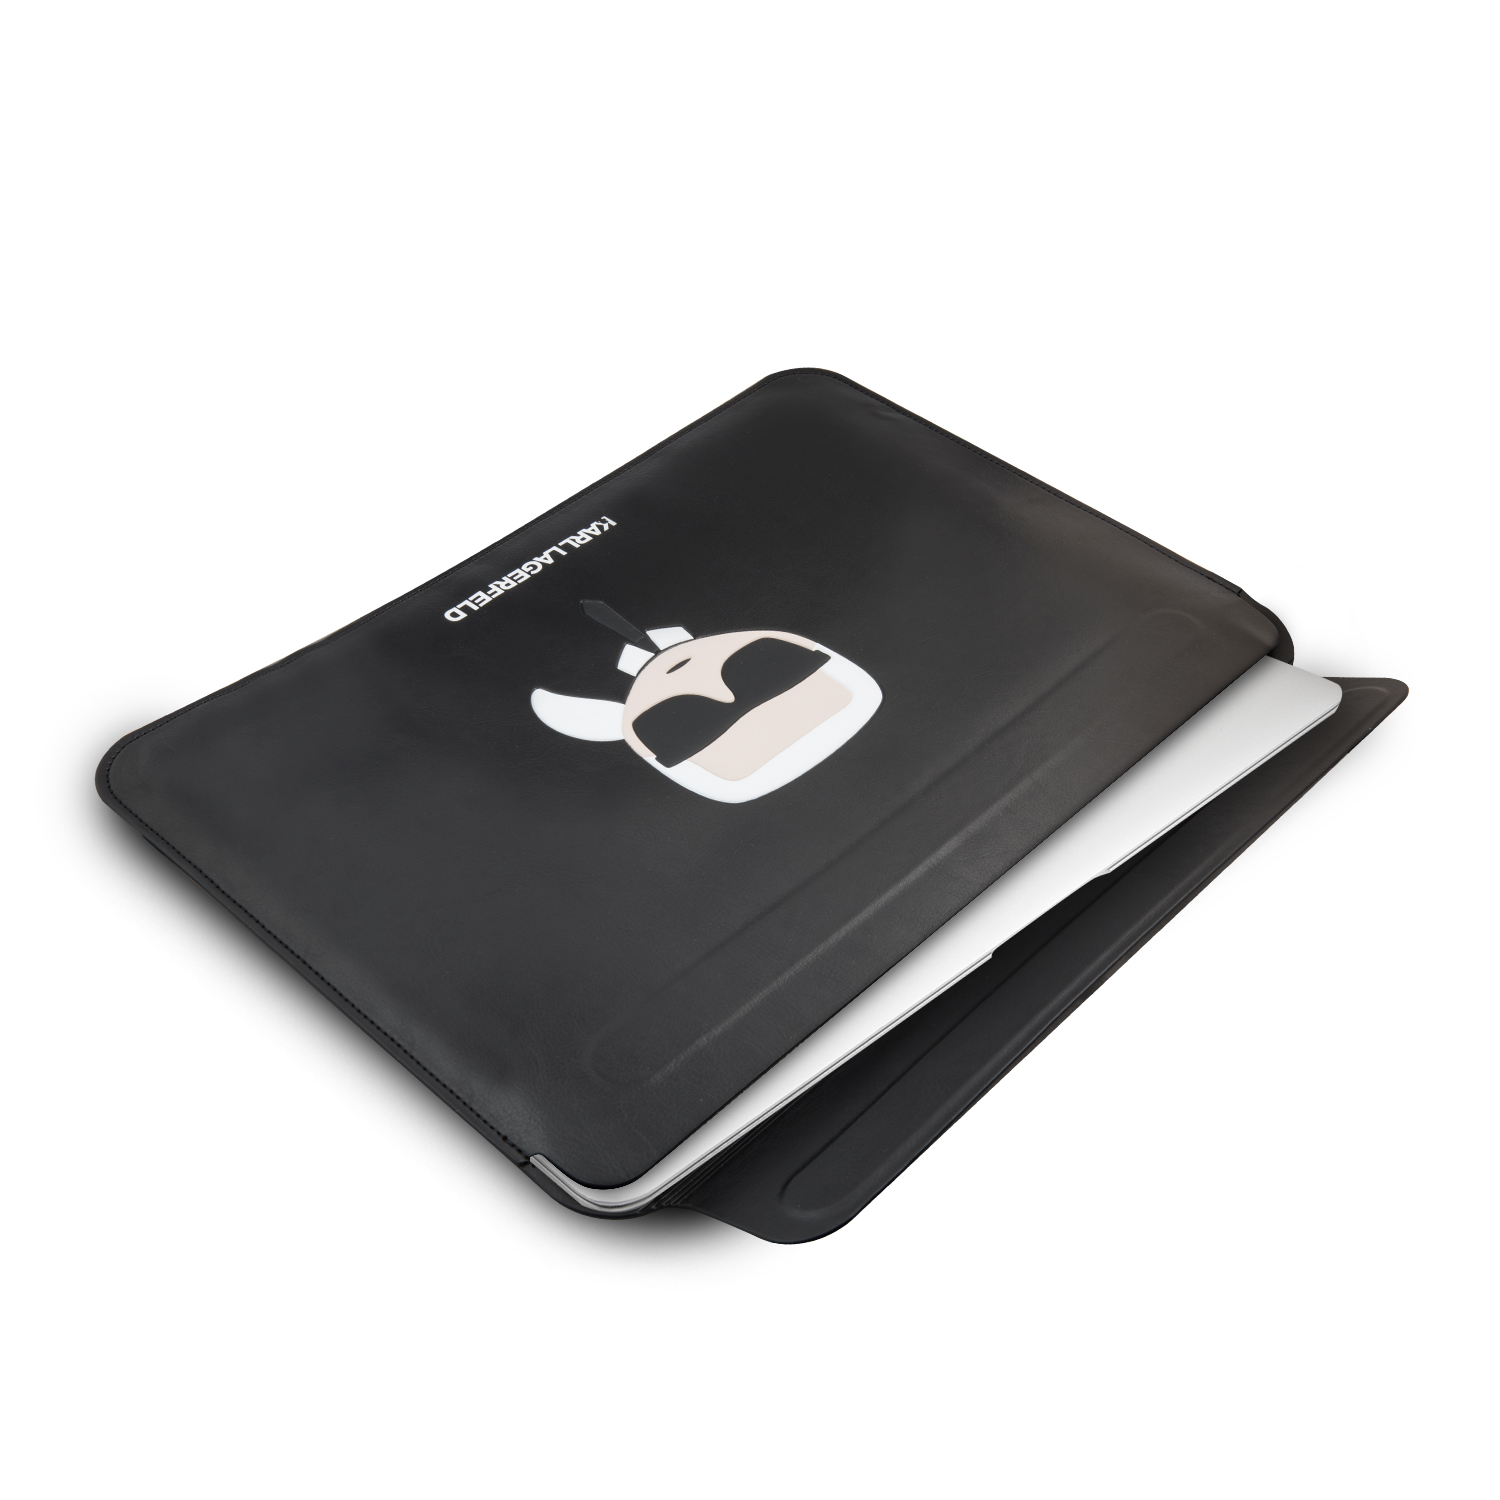 Karl Lagerfeld Kožené Sleeve pouzdro KLCS133KHBK Apple MacBook Air/Pro black